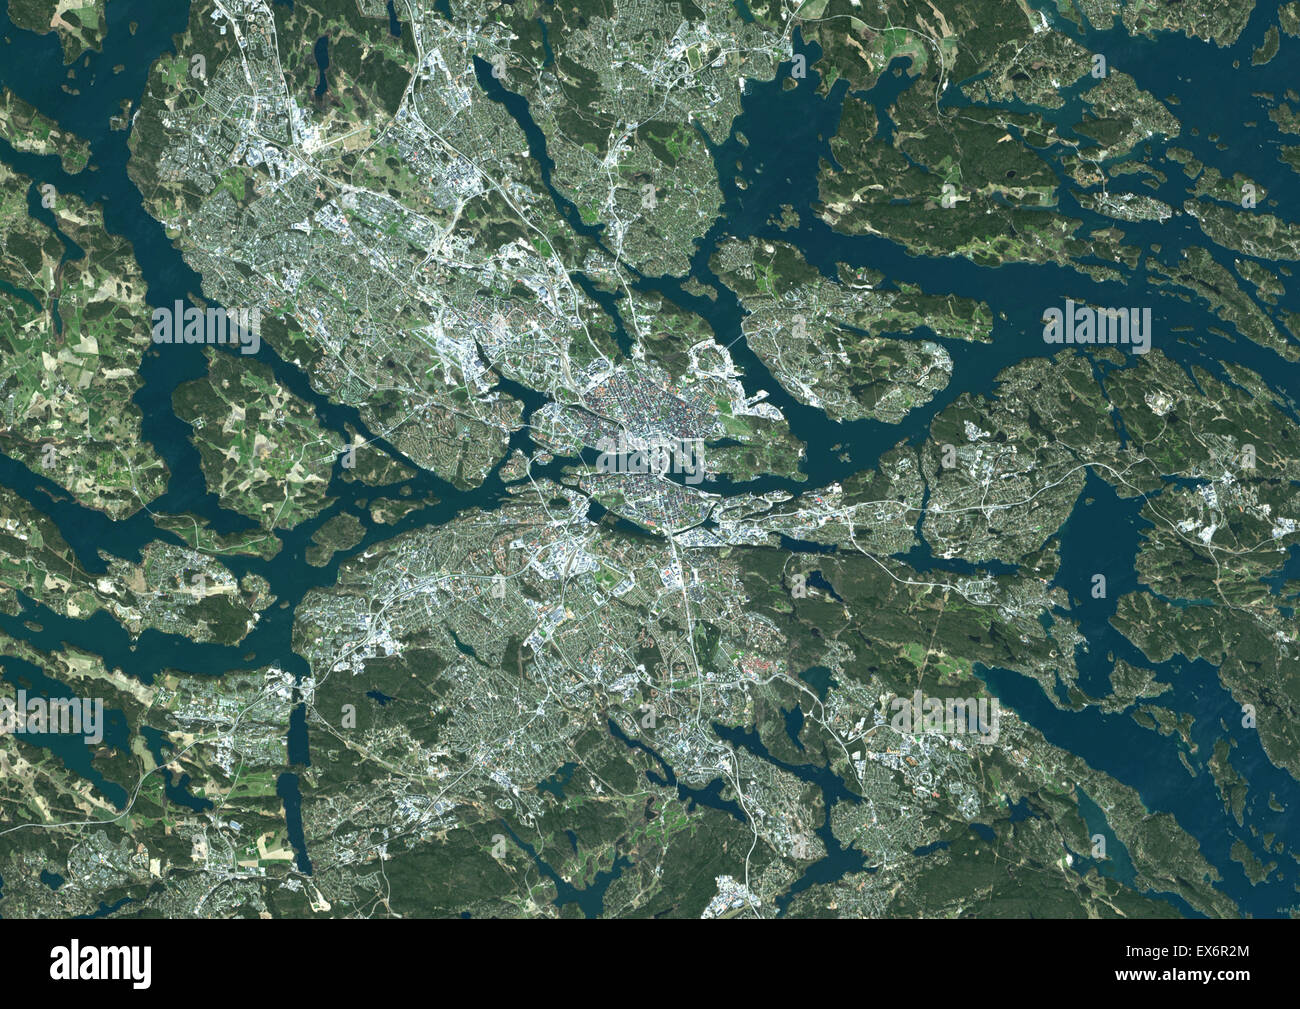 Colour satellite image of Stockholm, Sweden. Image taken on April 23, 2014 with Landsat 8 data. Stock Photo